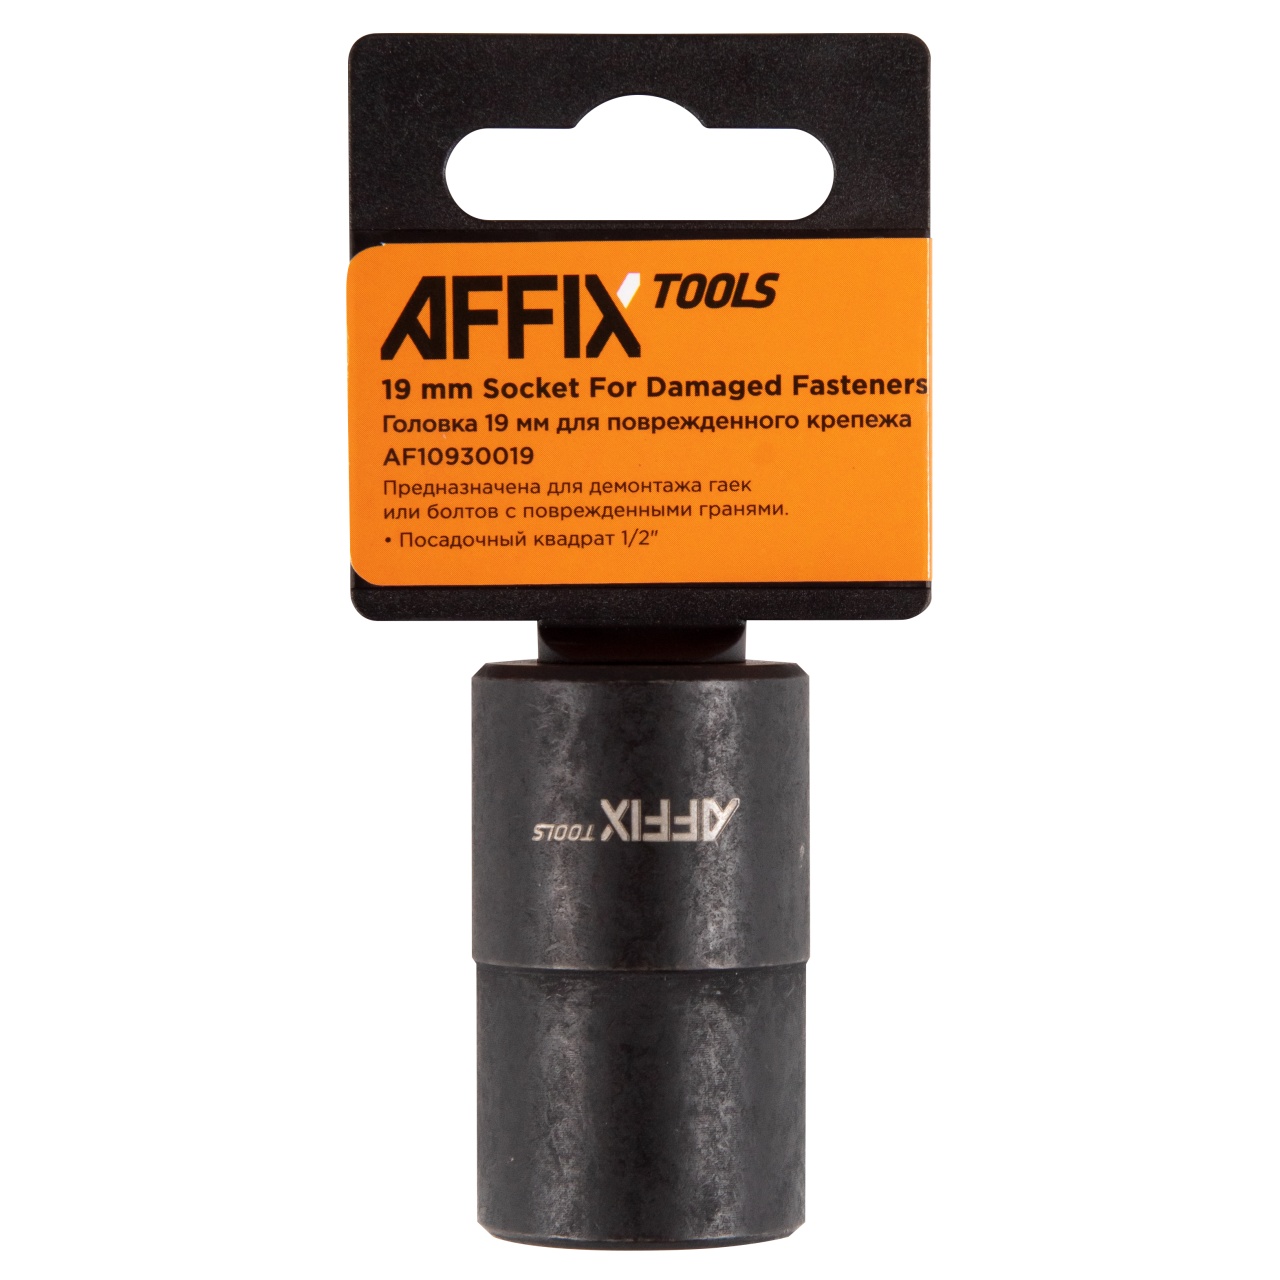 Головка для поврежденного крепежа 1/2", 19 мм AFFIX AF10930019